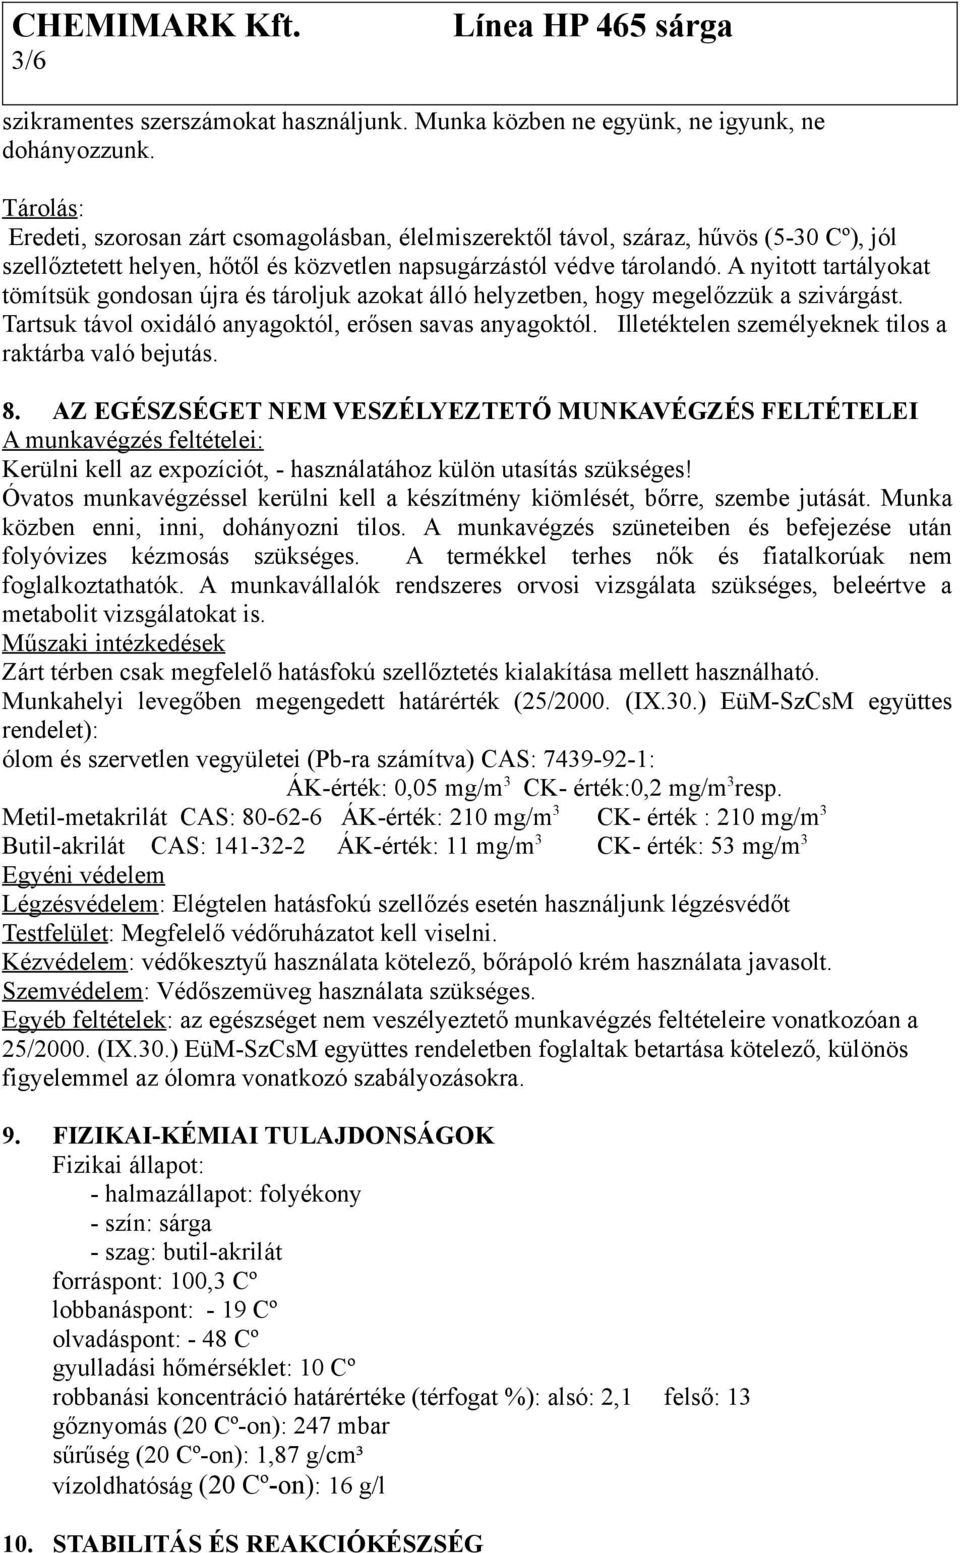 BIZTONSÁGI ADATLAP. A magyarországi Egészségügyi Toxikológiai Tájékoztató  Szolgálat (ETTSZ) éjjel-nappal hívható száma: - PDF Ingyenes letöltés